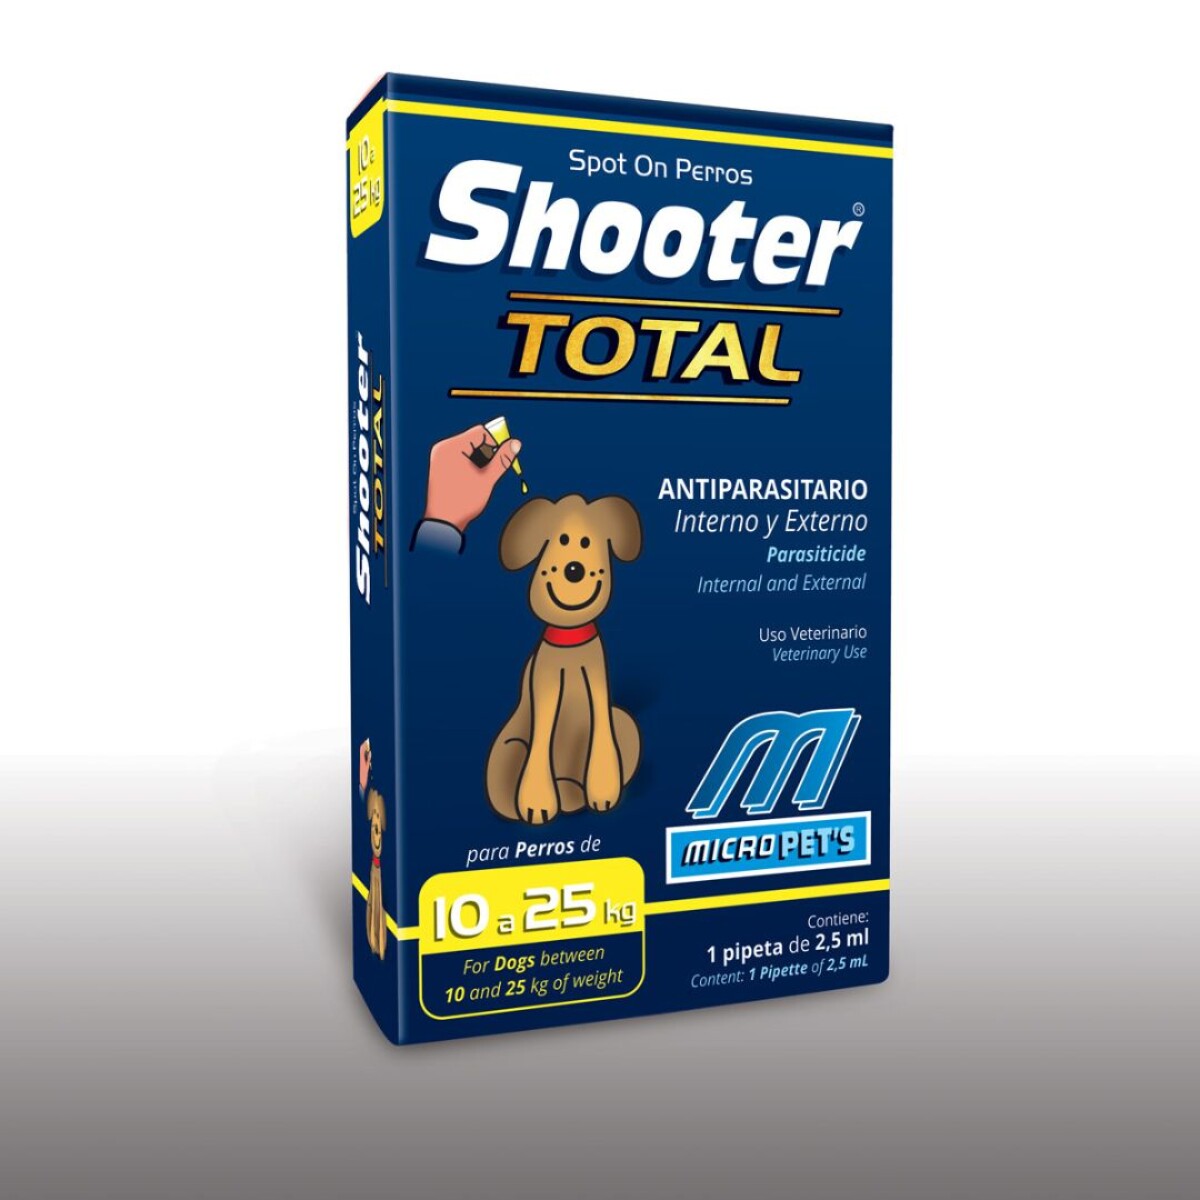 Shooter Total Perro De 10 A 25 Kg 2.5 Ml 